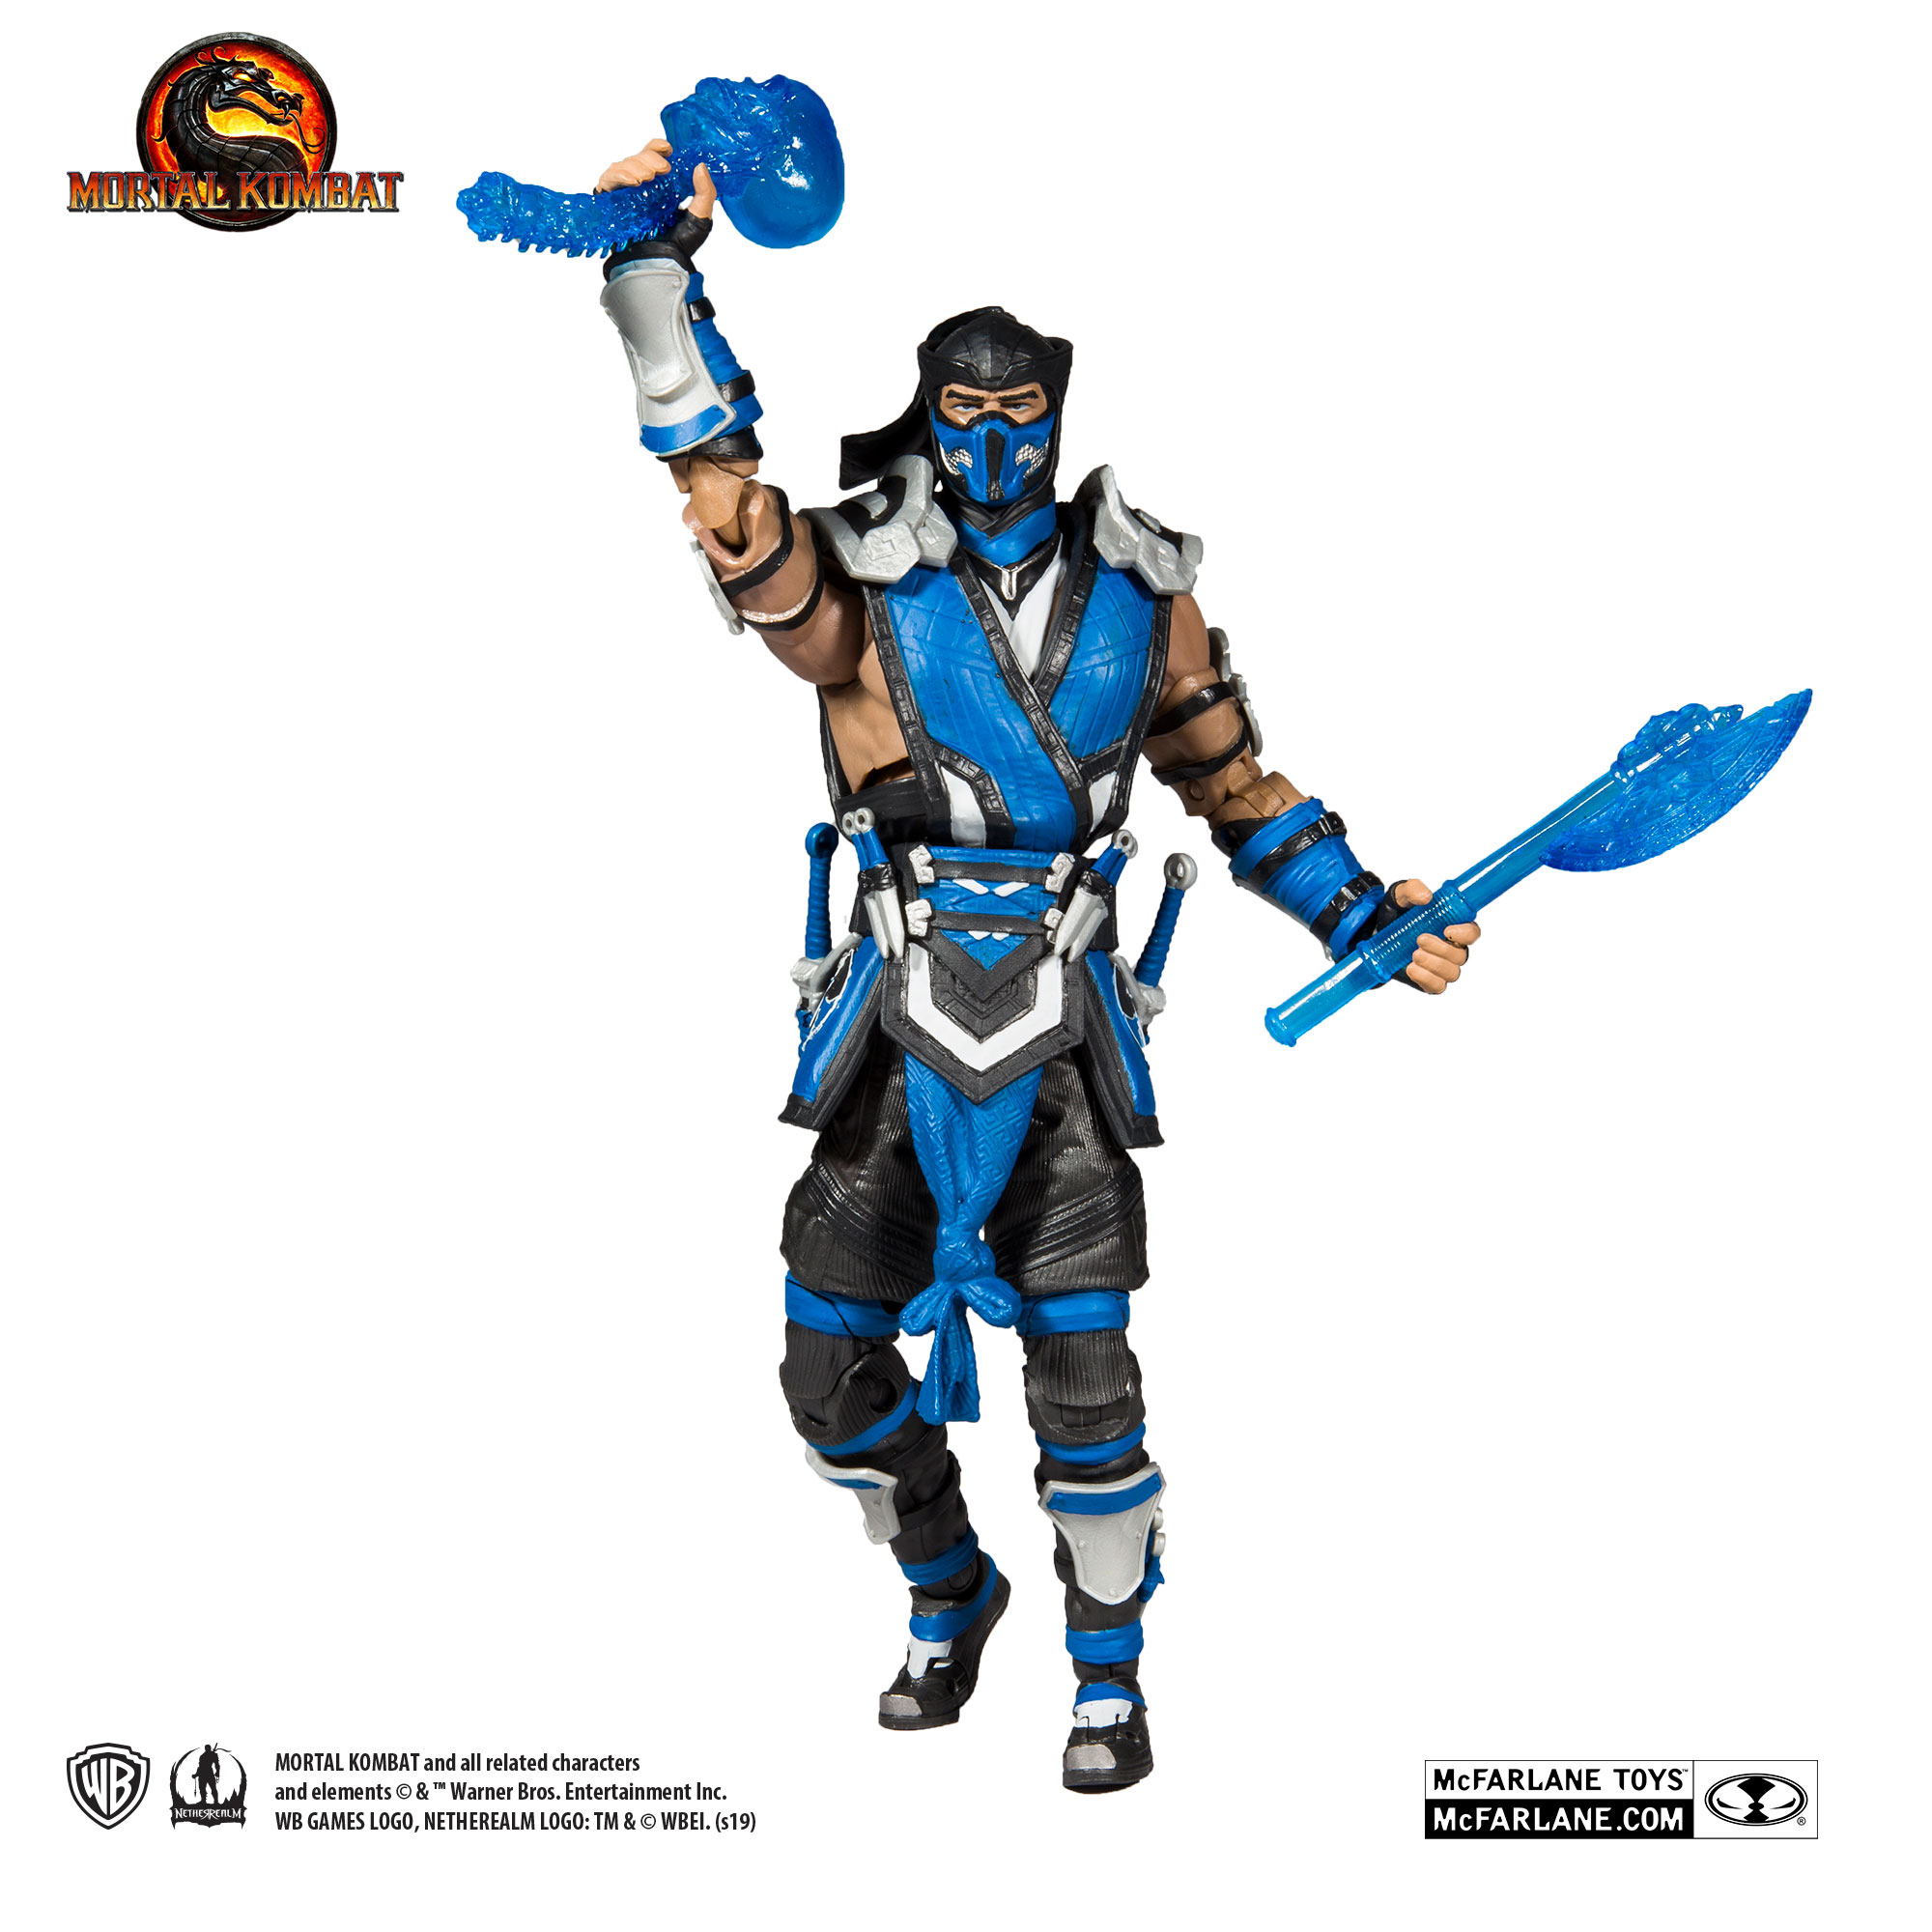 Mortal Kombat - Baraka Horkata - McFarlane Toys 7'' figure